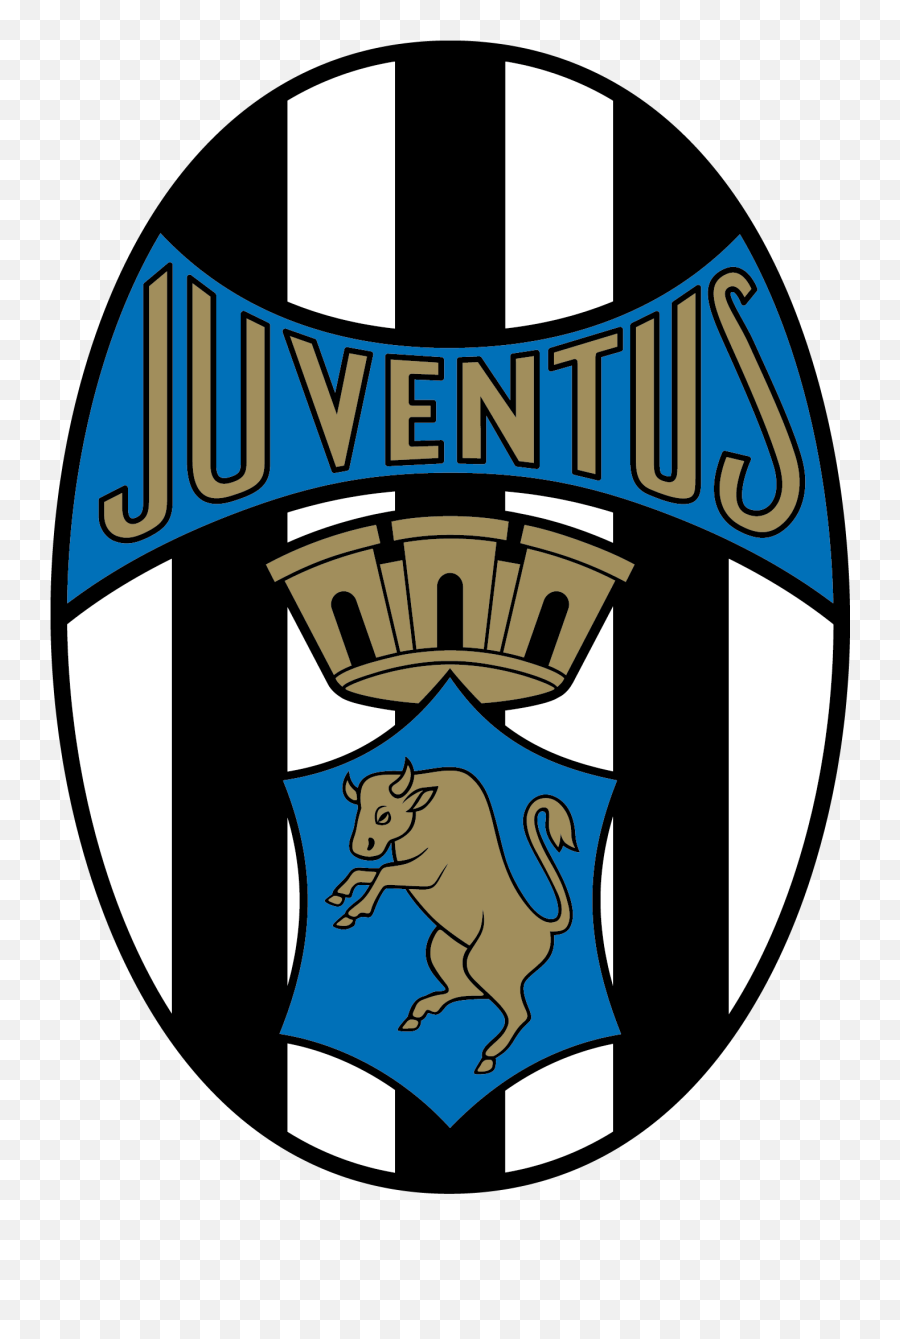 Download Hd Juventus Team Logo Soccer - Juventus Logo 2020 Png,Juventus Logo Png